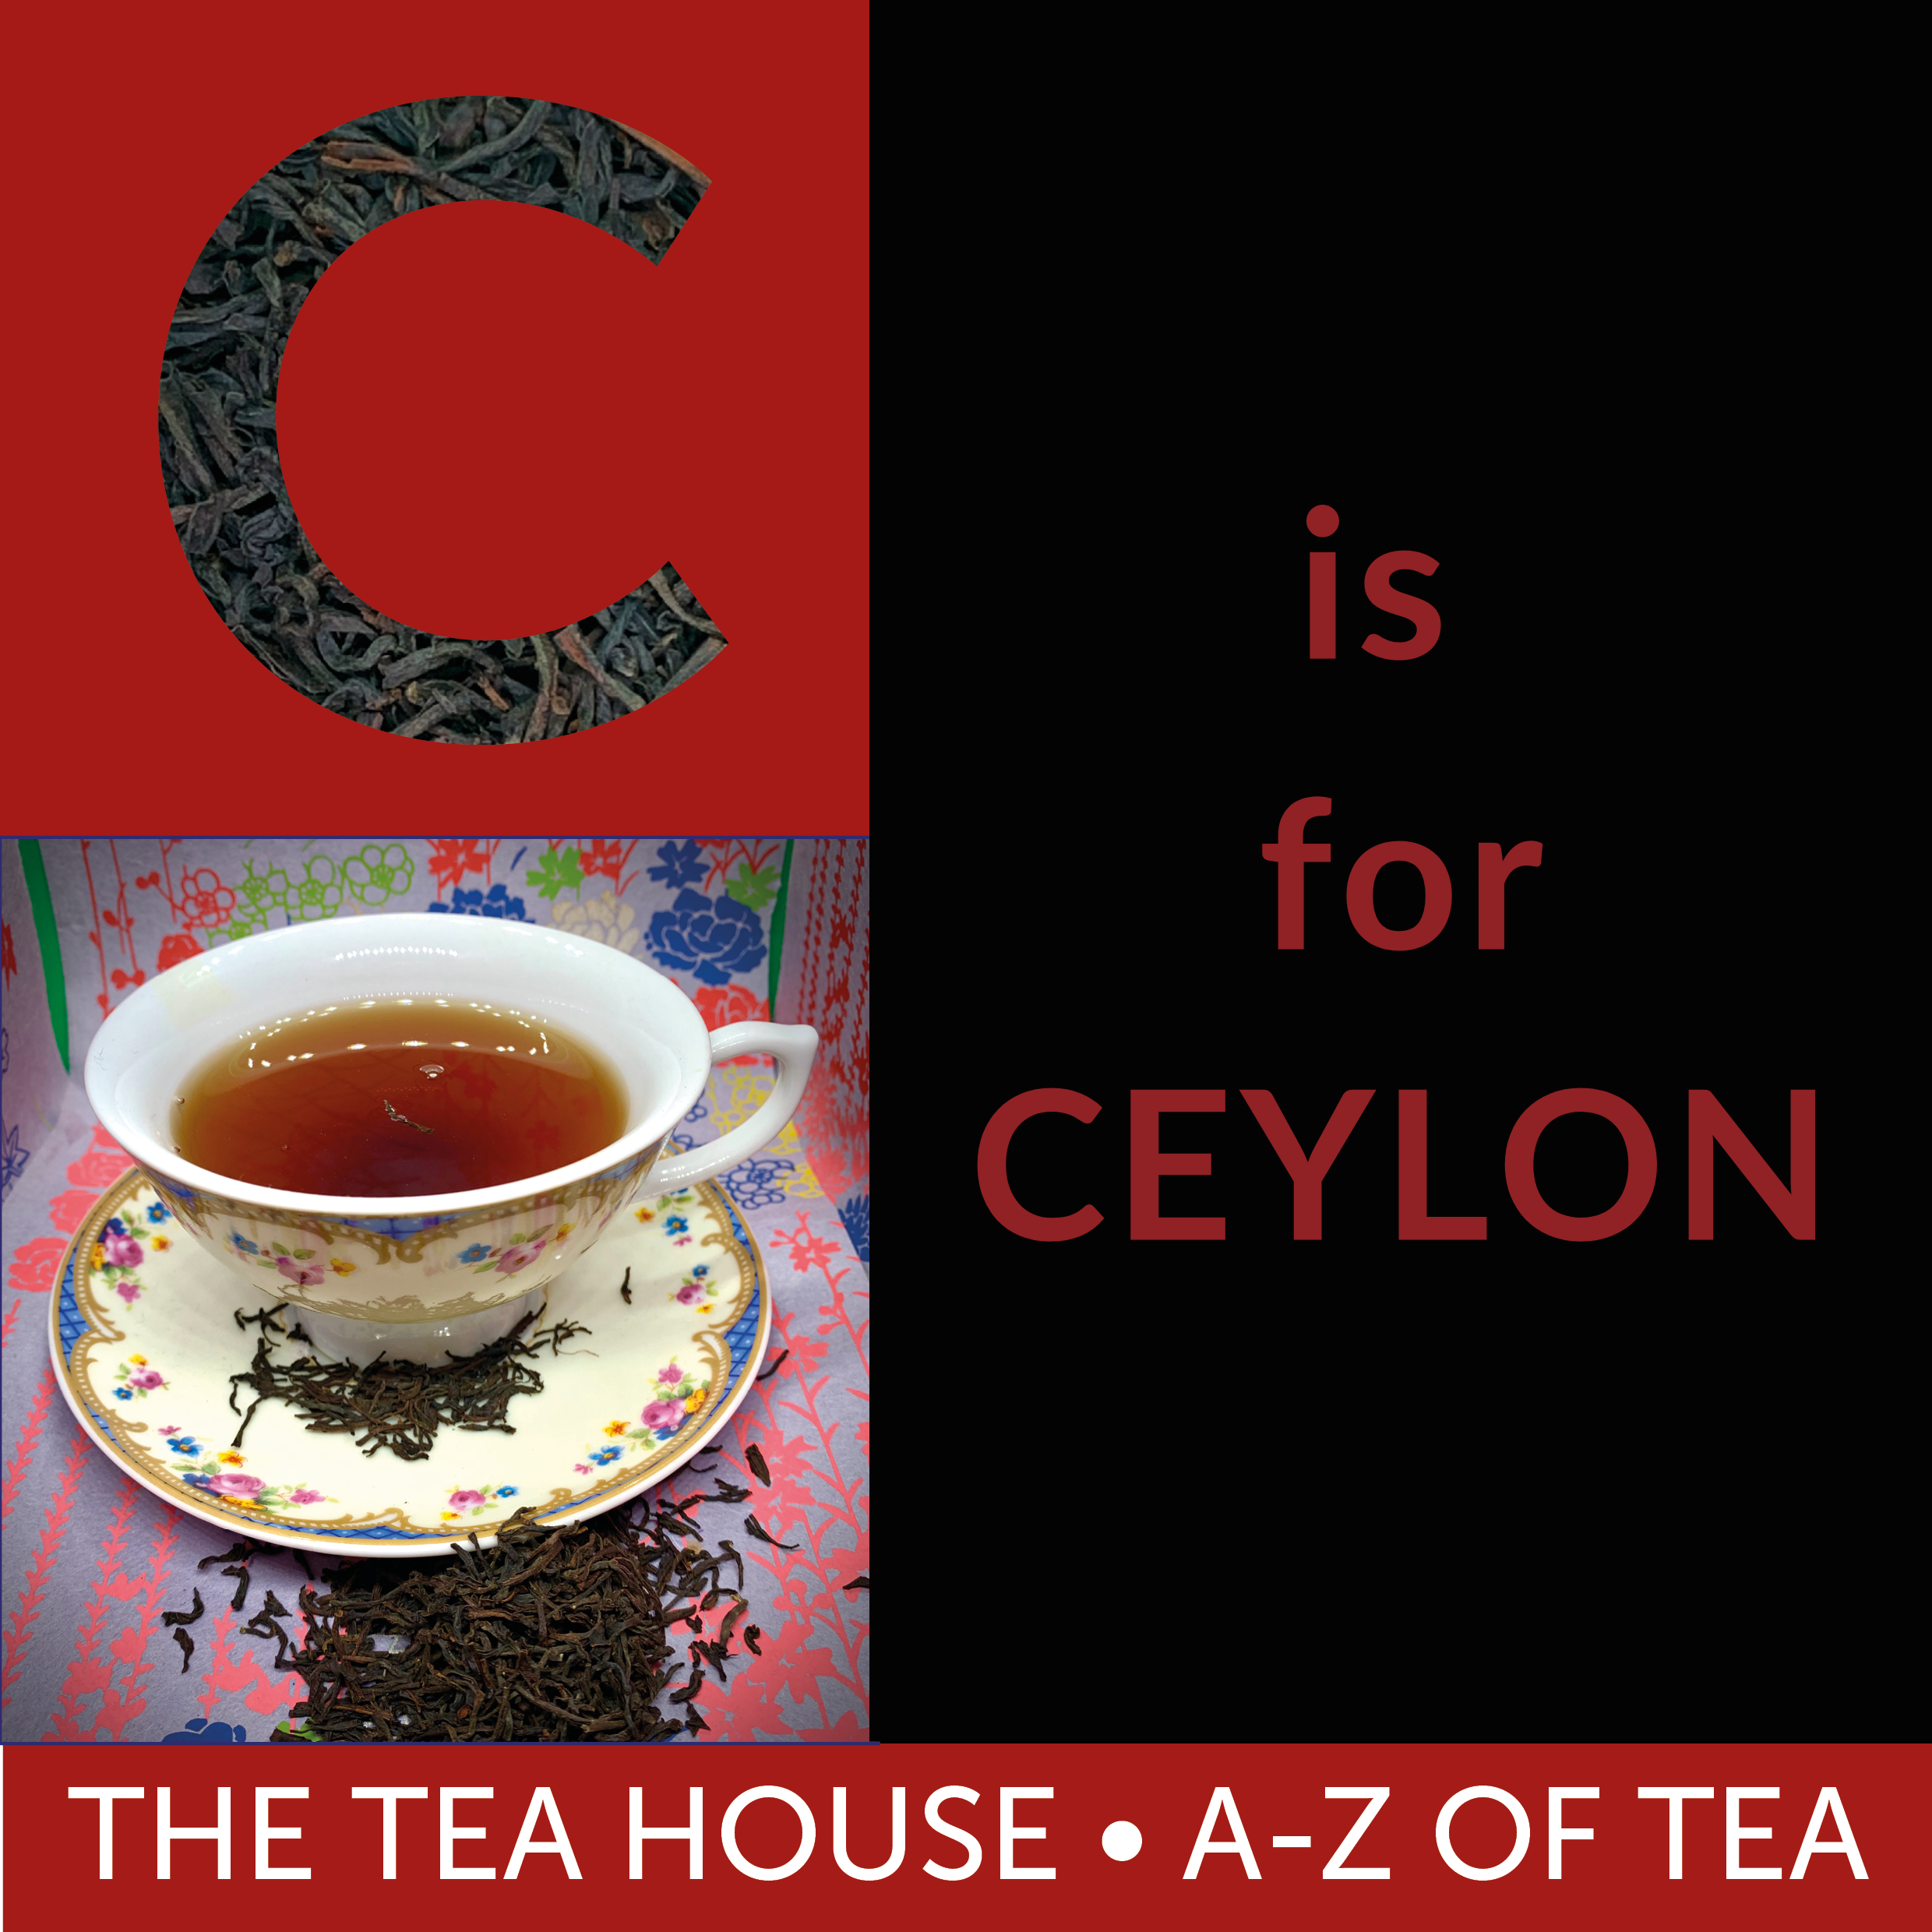 C is for Ceylon